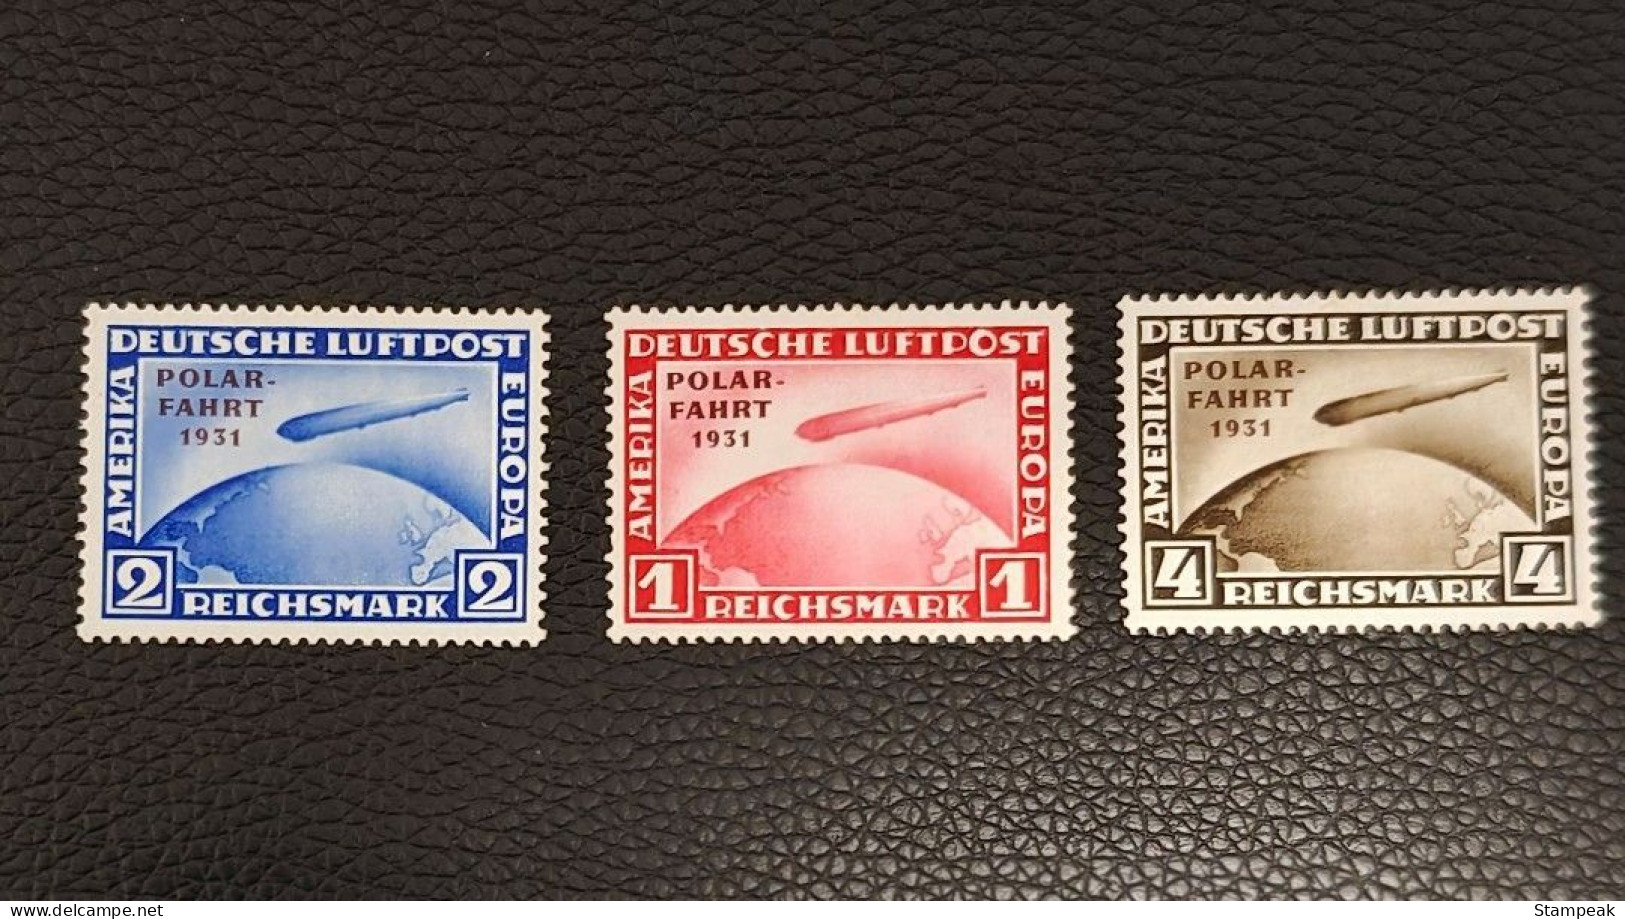 German Empire 1931 - Zeppelin Stamps With Polar Flight Overprint - Airmail & Zeppelin